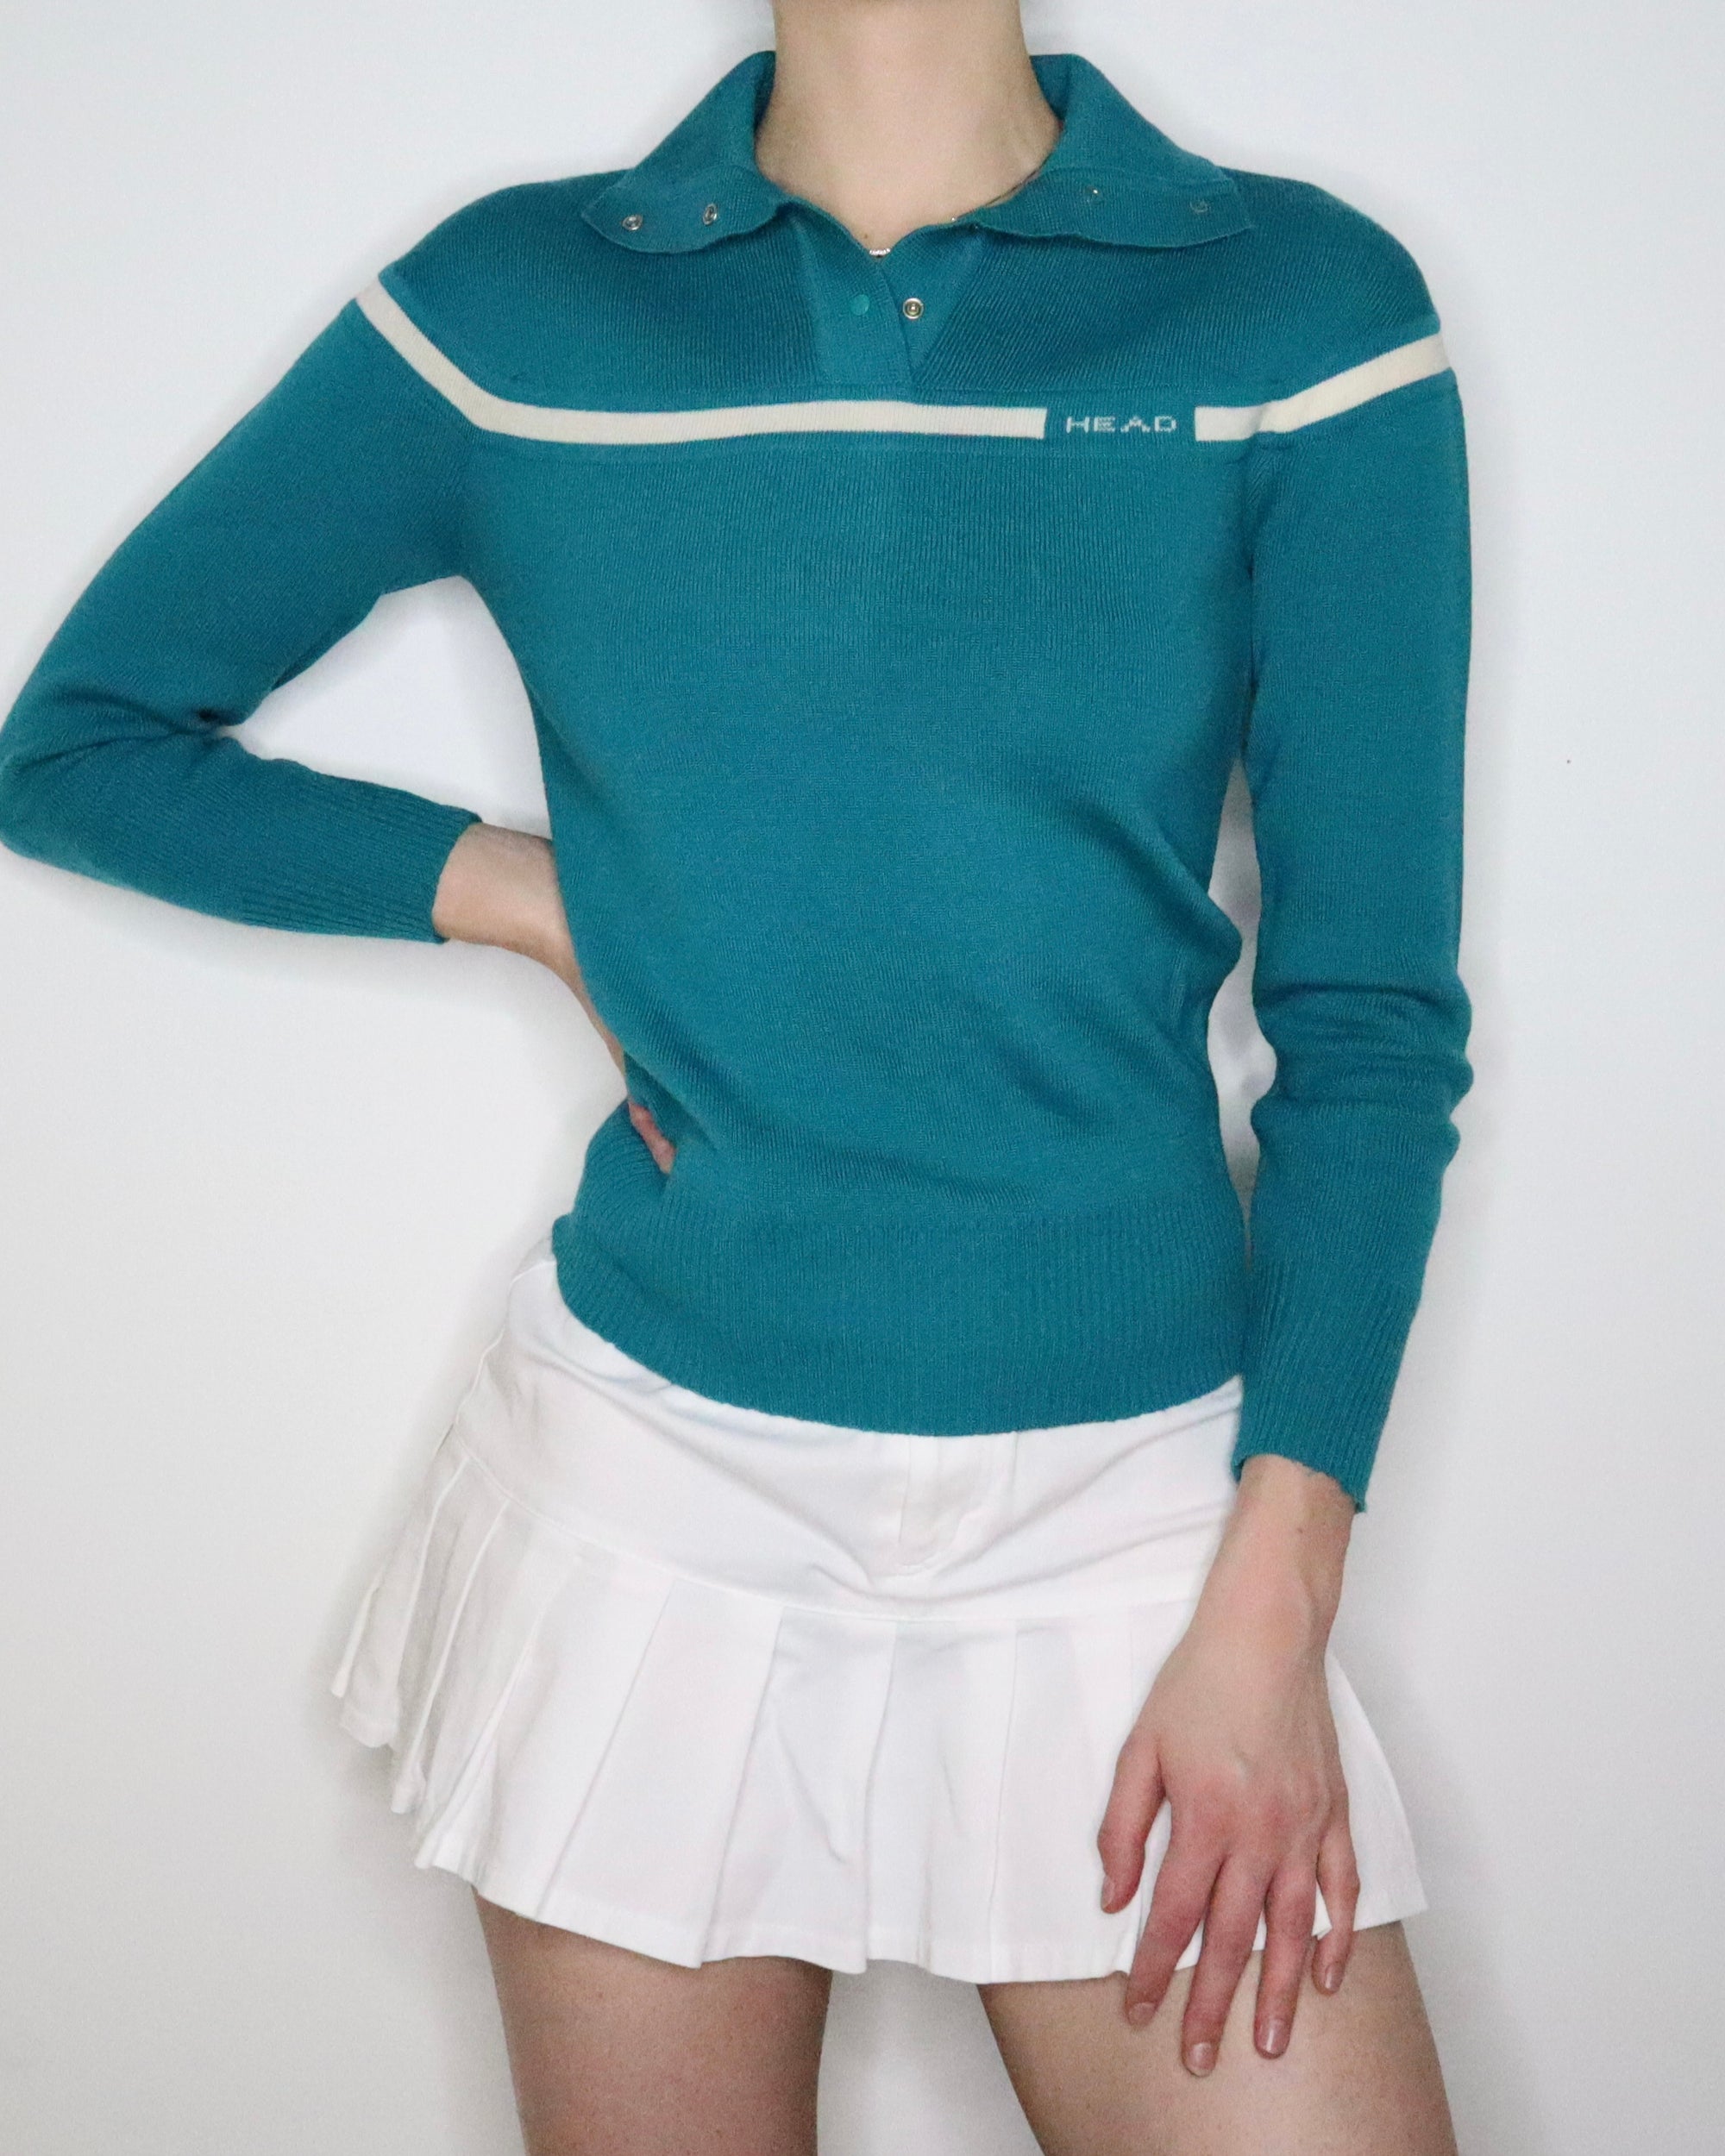 Rare 70s Cheerleader Sweater (S-M) 